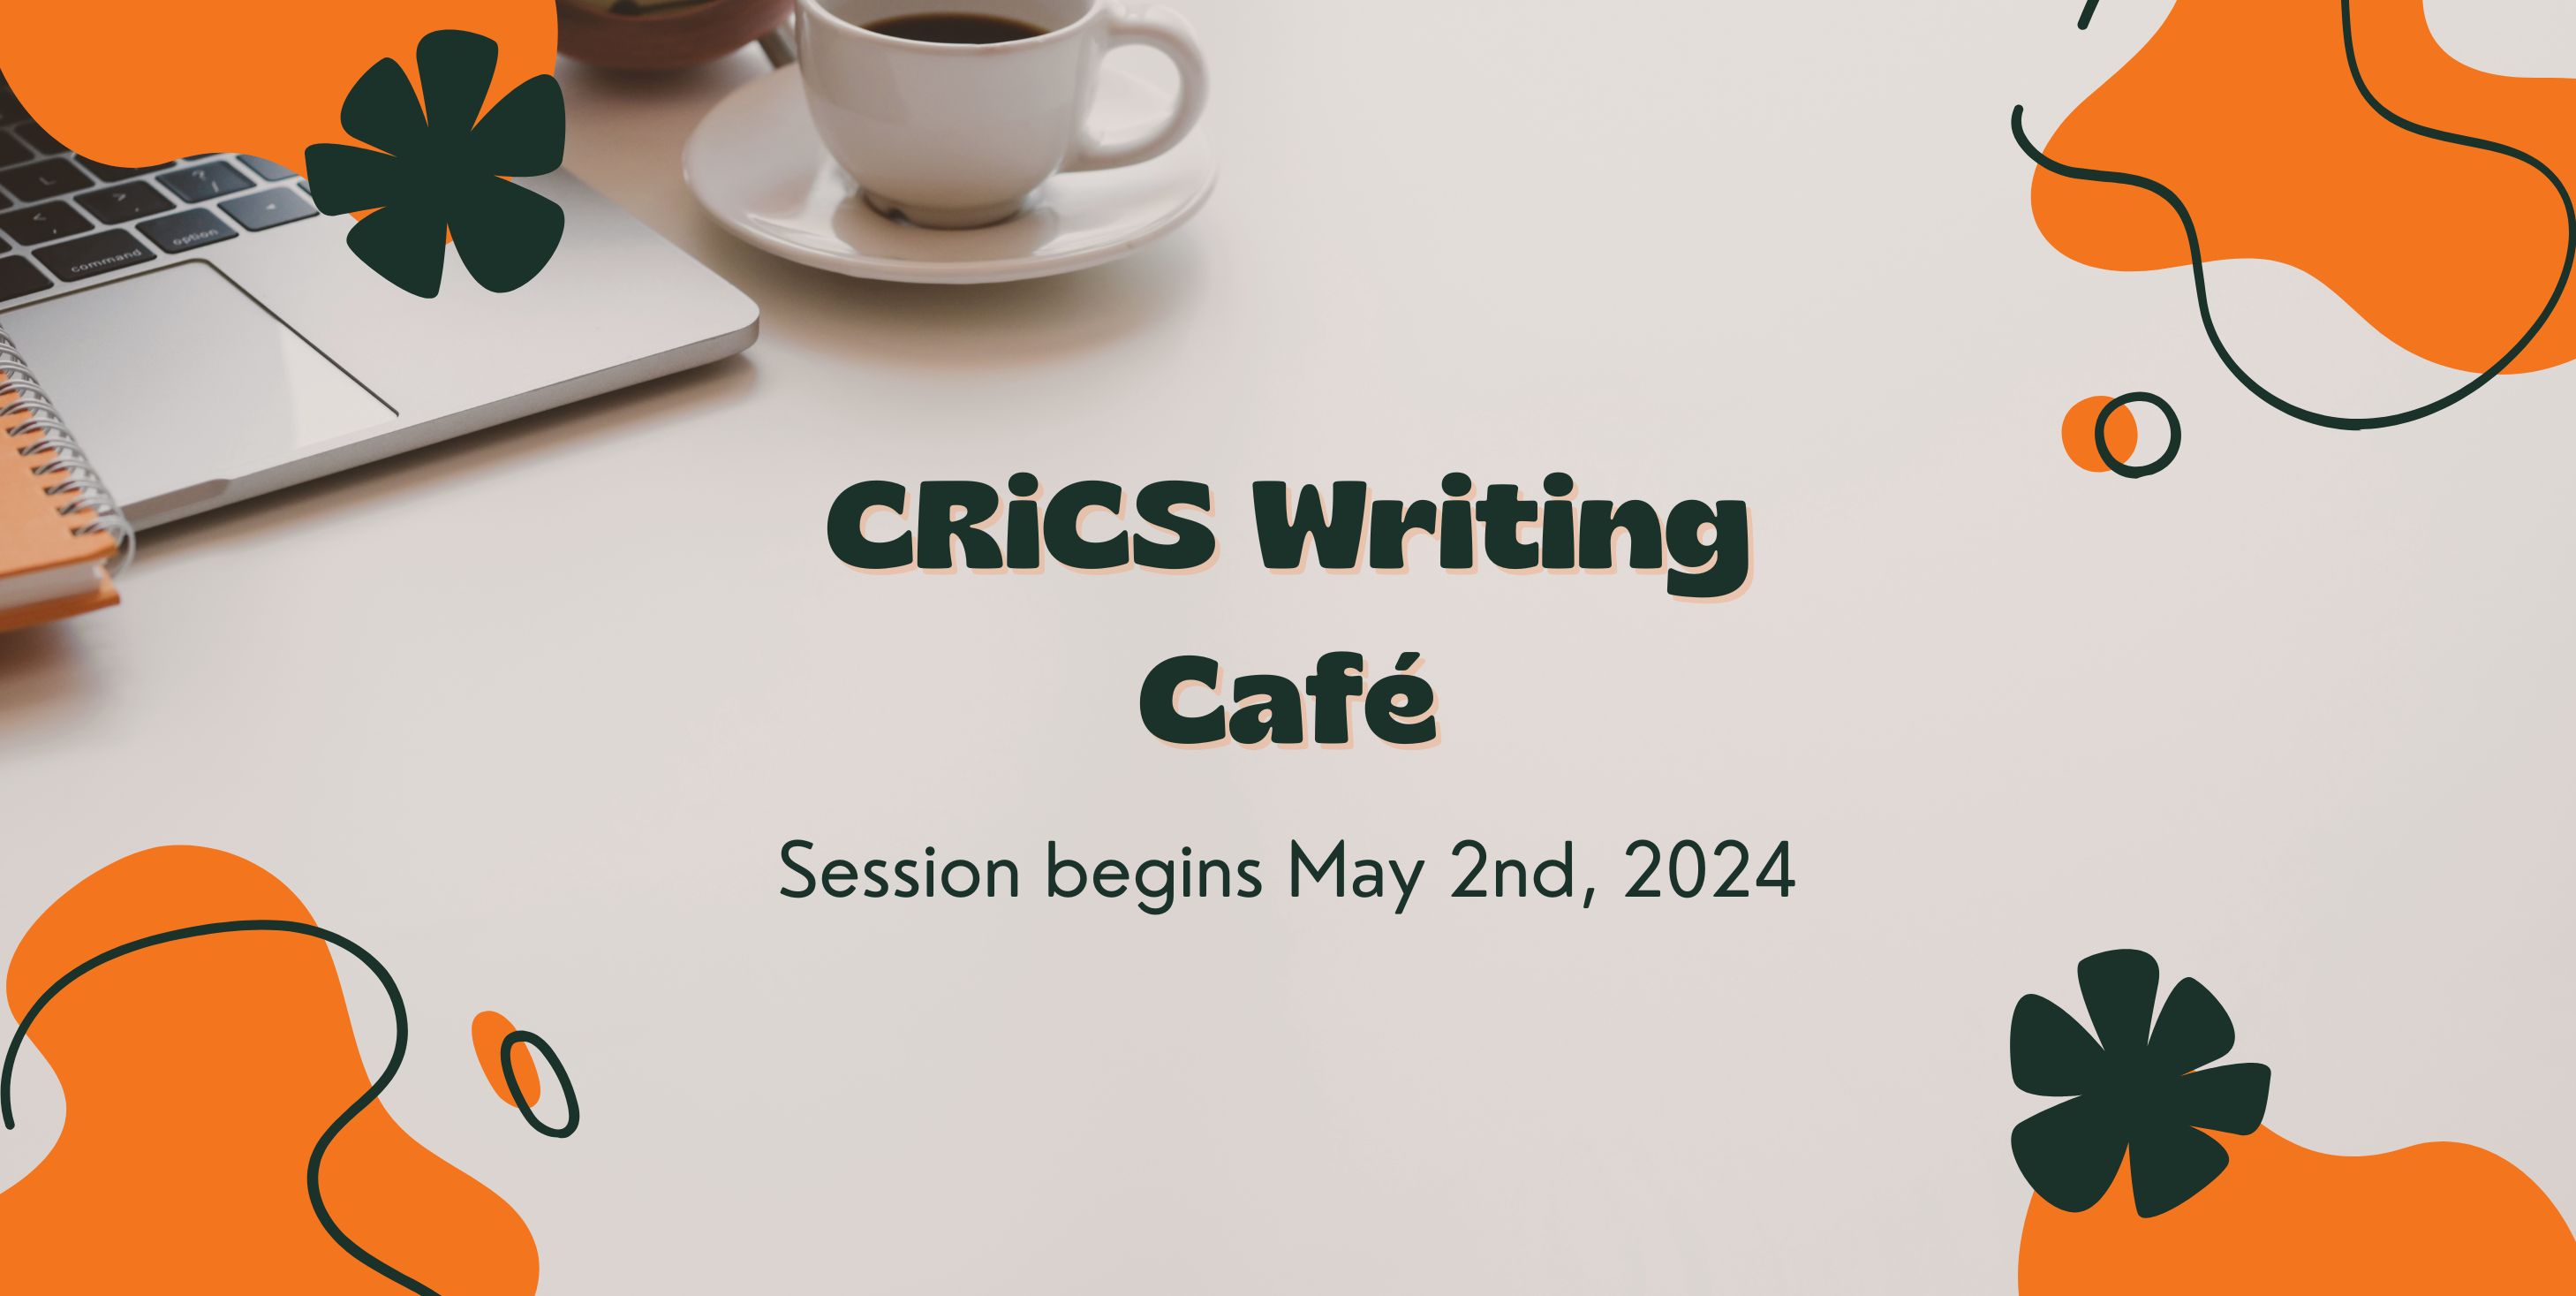 CRiCS Writing Cafe